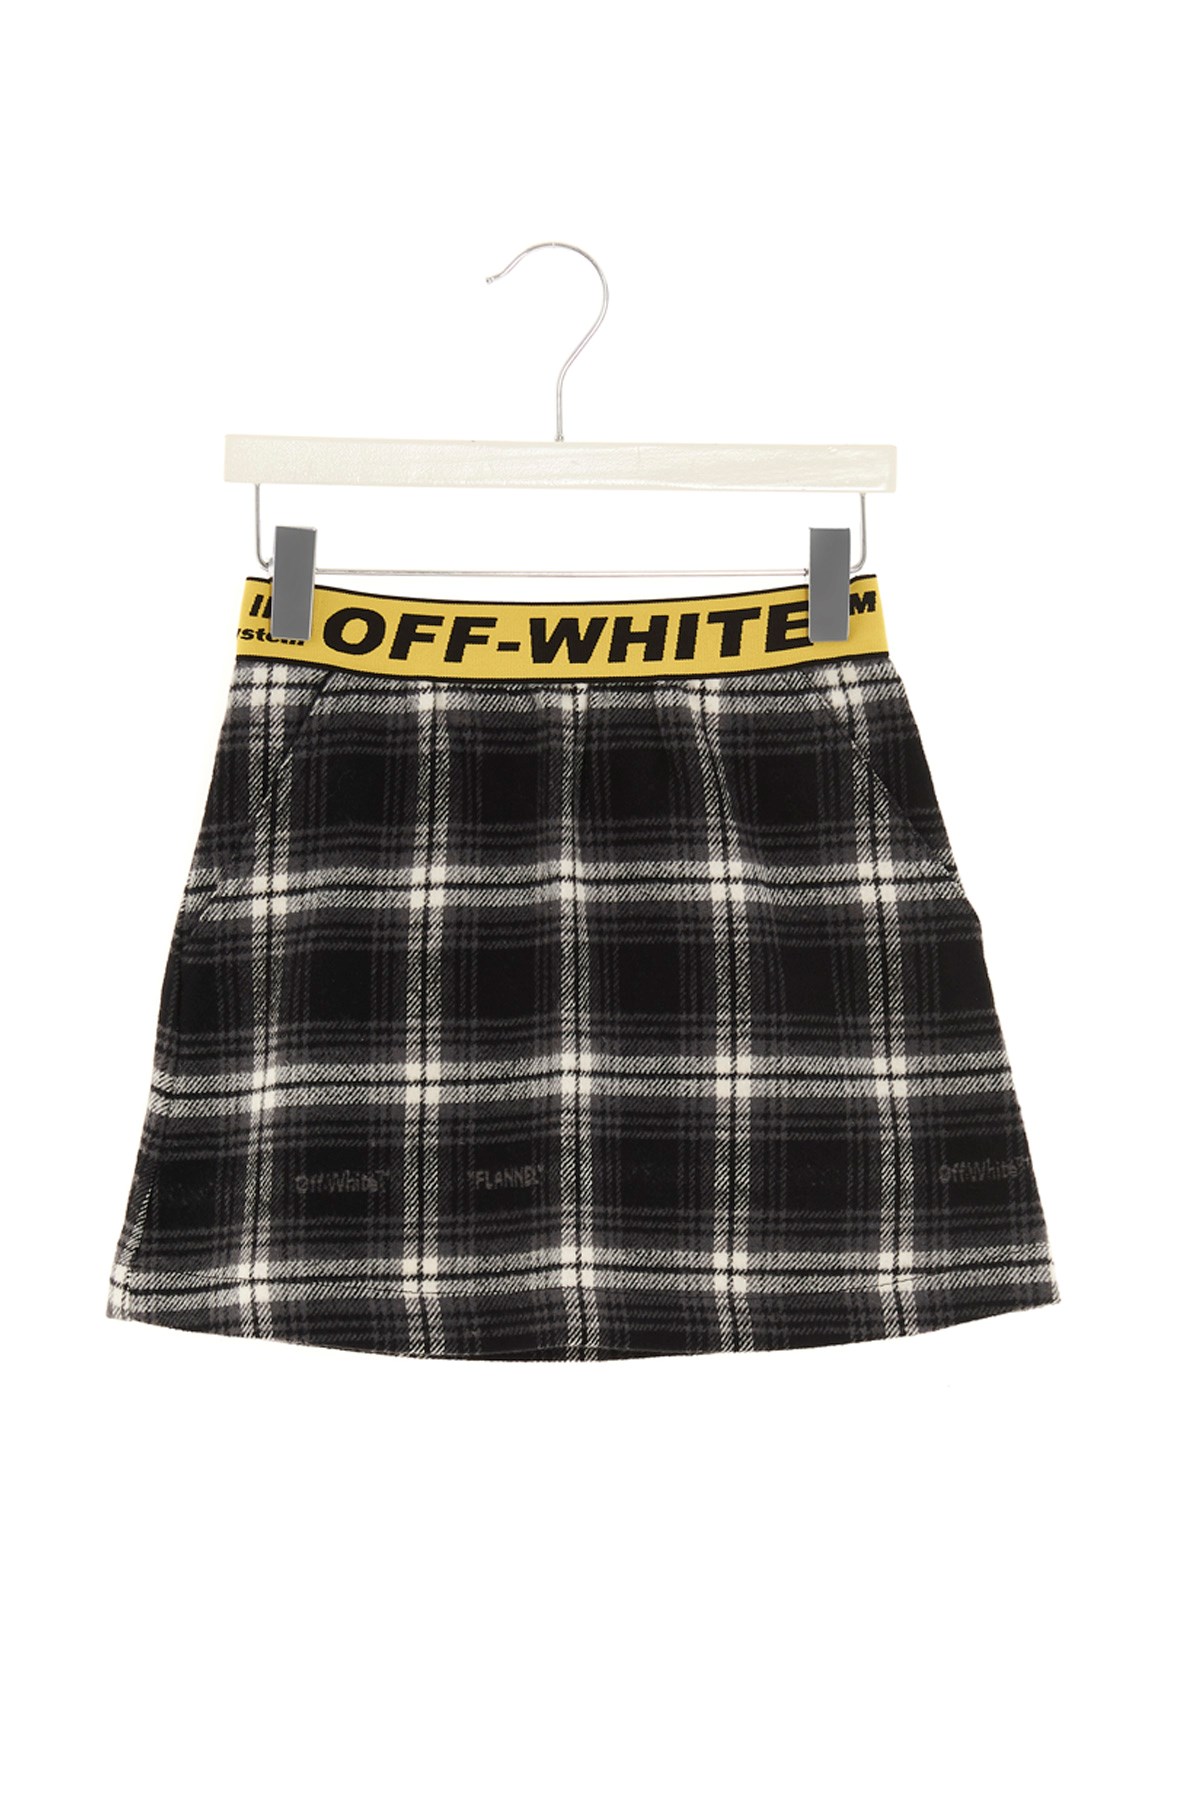 OFF-WHITE 'Check Logo' Skirt